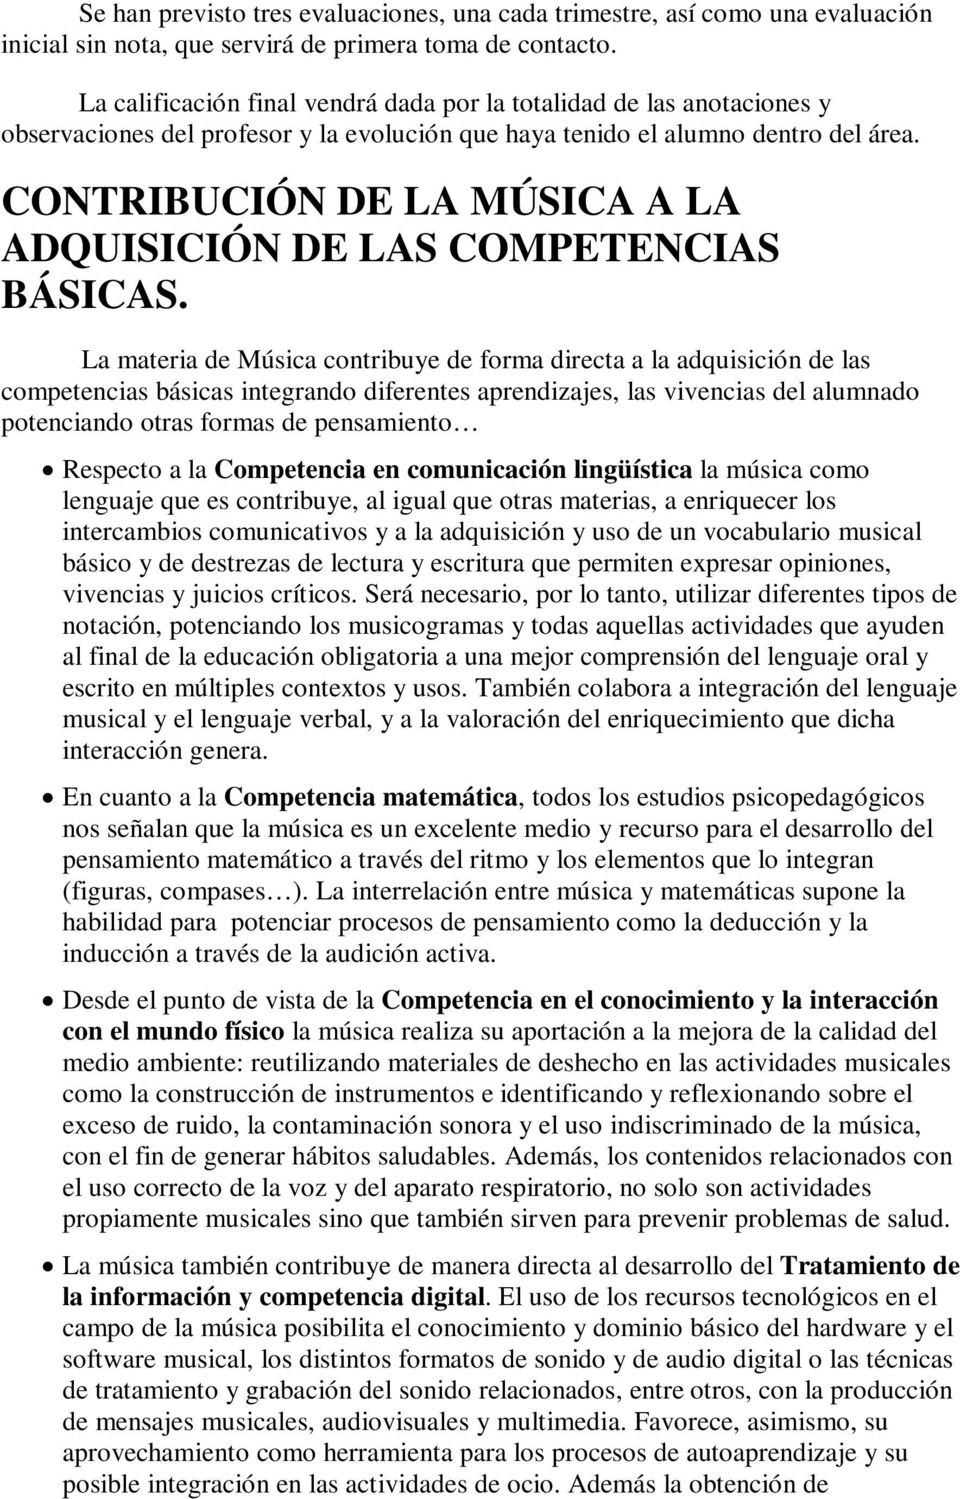 CONTRIBUCIÓN DE LA MÚSICA A LA ADQUISICIÓN DE LAS COMPETENCIAS BÁSICAS.